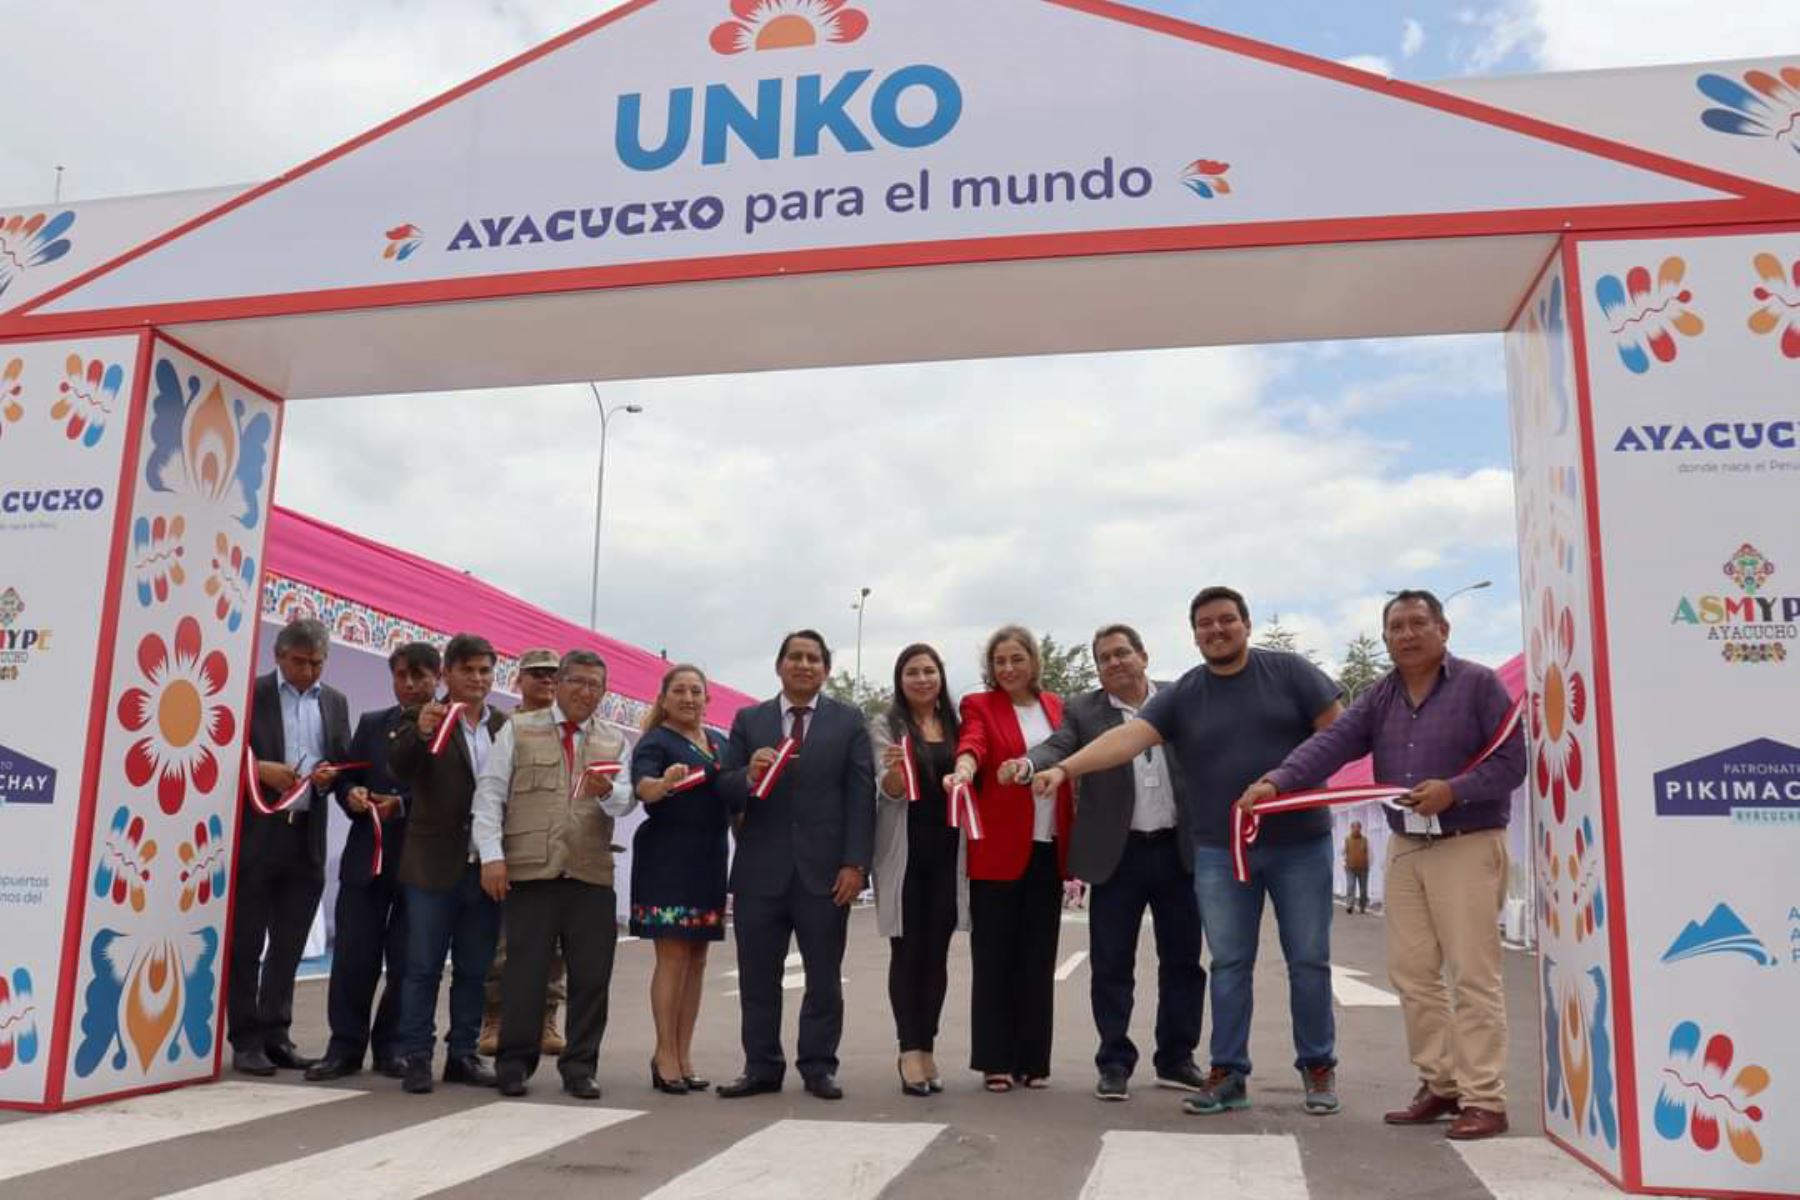 La feria Unko atenderá hasta el 10 de abril en el aeropuerto Alfredo Mendívil Duarte de Ayacucho. Foto: ANDINA/Difusión